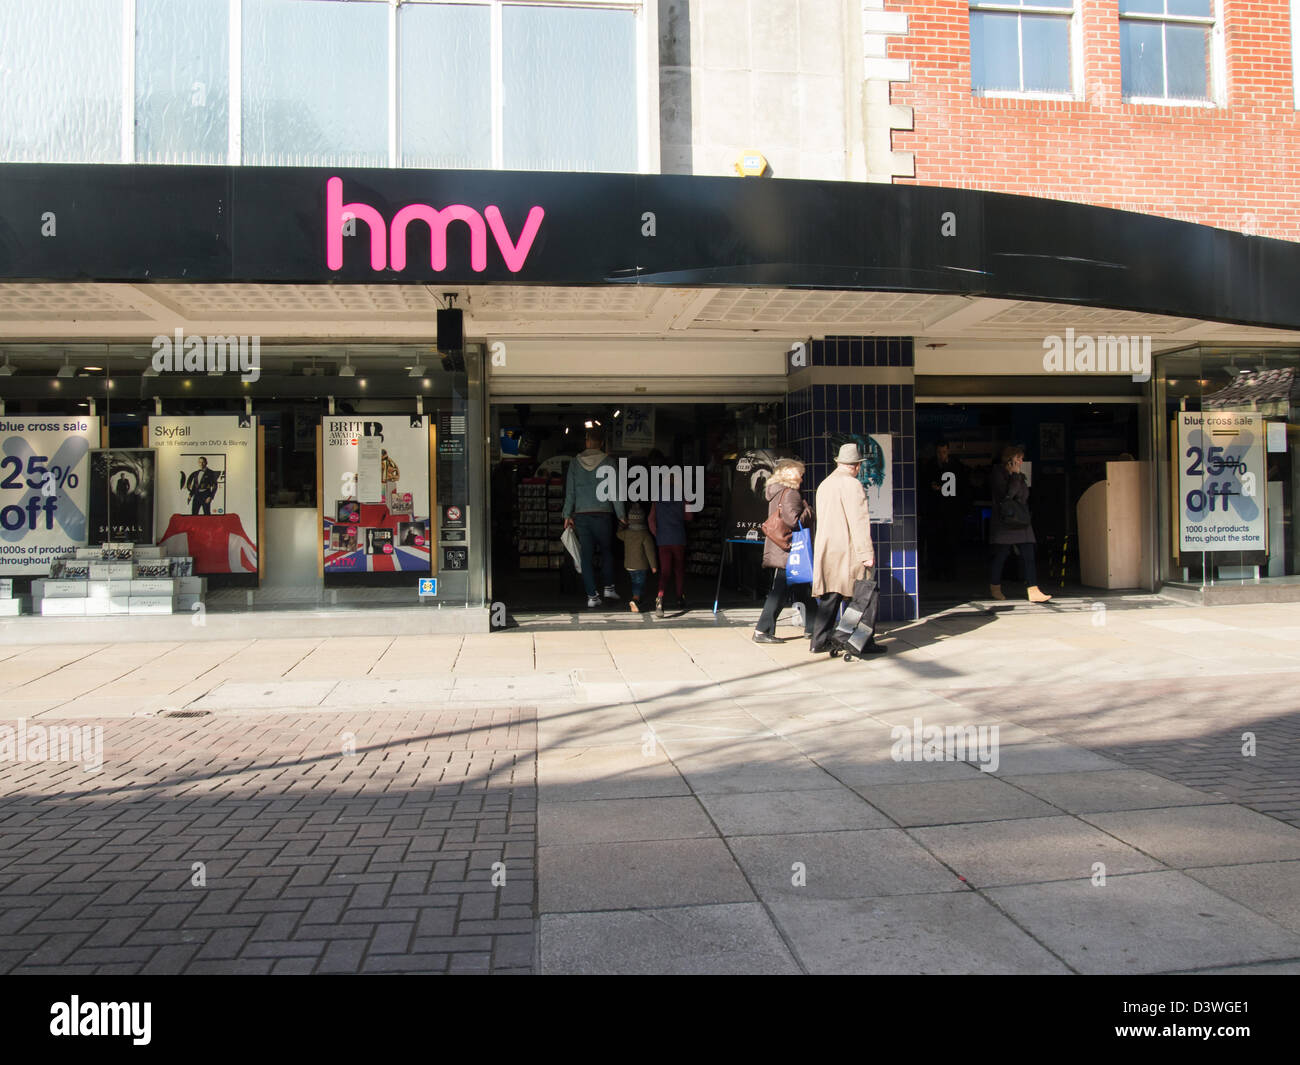 Un magasin HMV avec des signes annonçant une vente croix bleue avec 25  % sur marchandise Banque D'Images